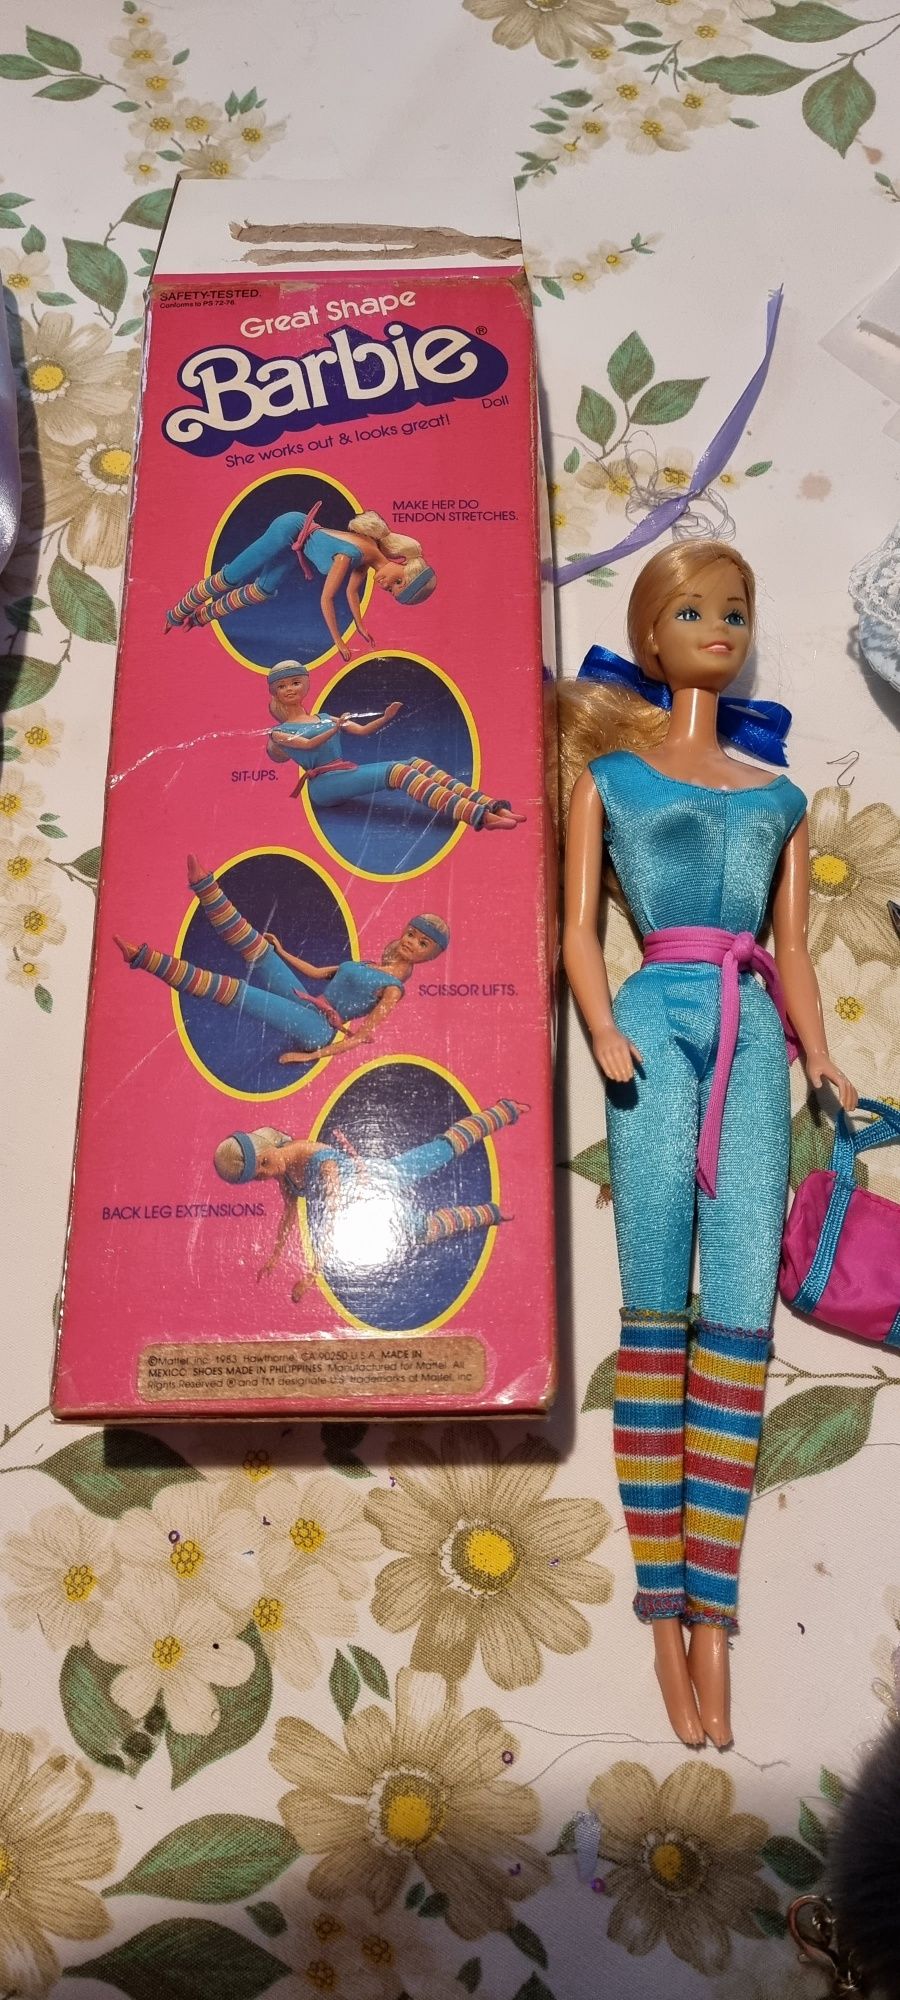 Barbie great shape 1983